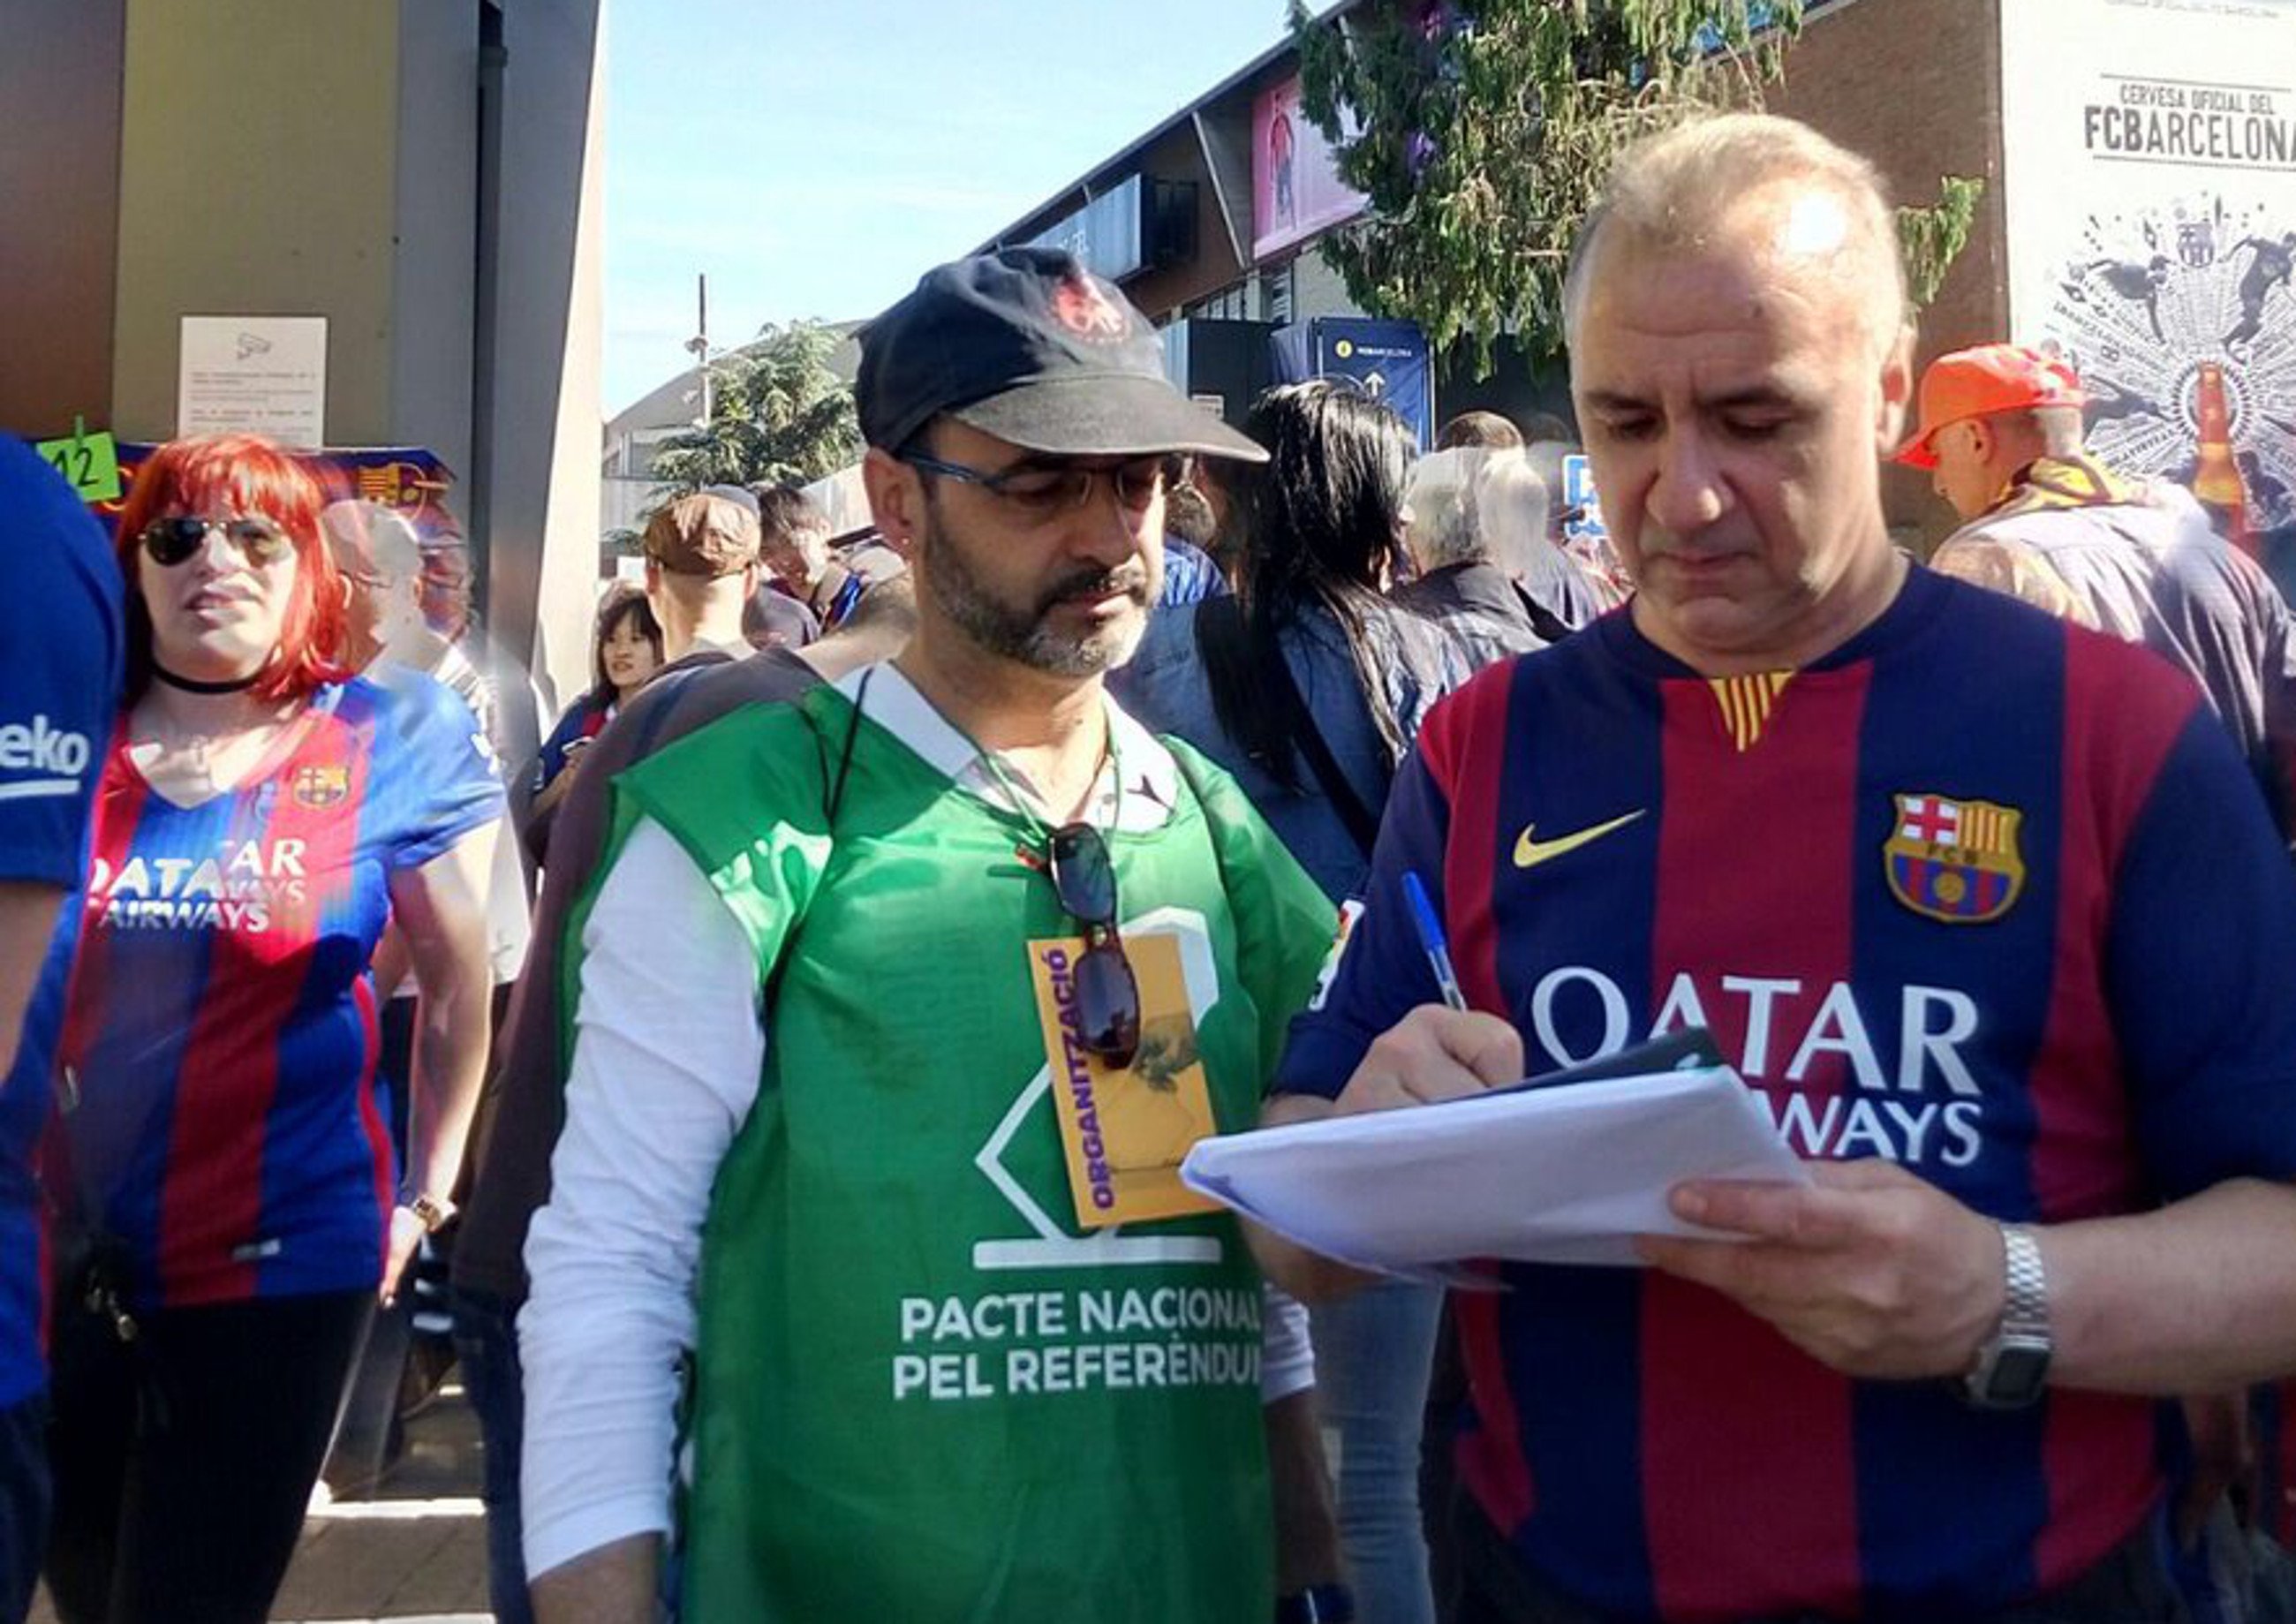 La recollida de signatures pel referèndum segueix al Camp Nou